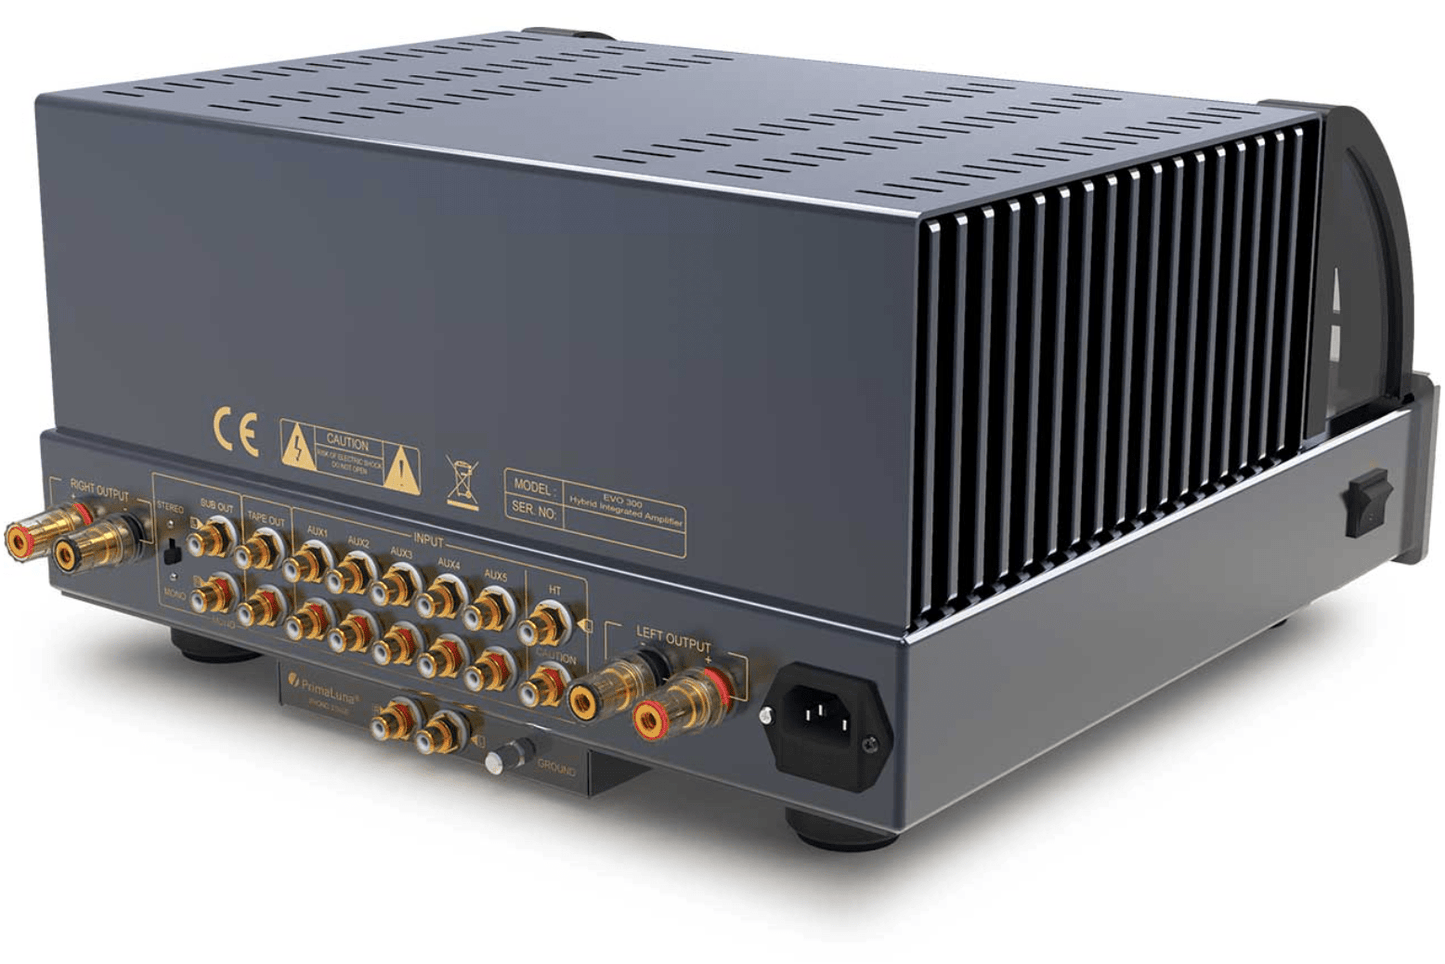 PrimaLuna Integrated Amplifiers PrimaLuna EVO300 Hybrid Integrated Amplifier